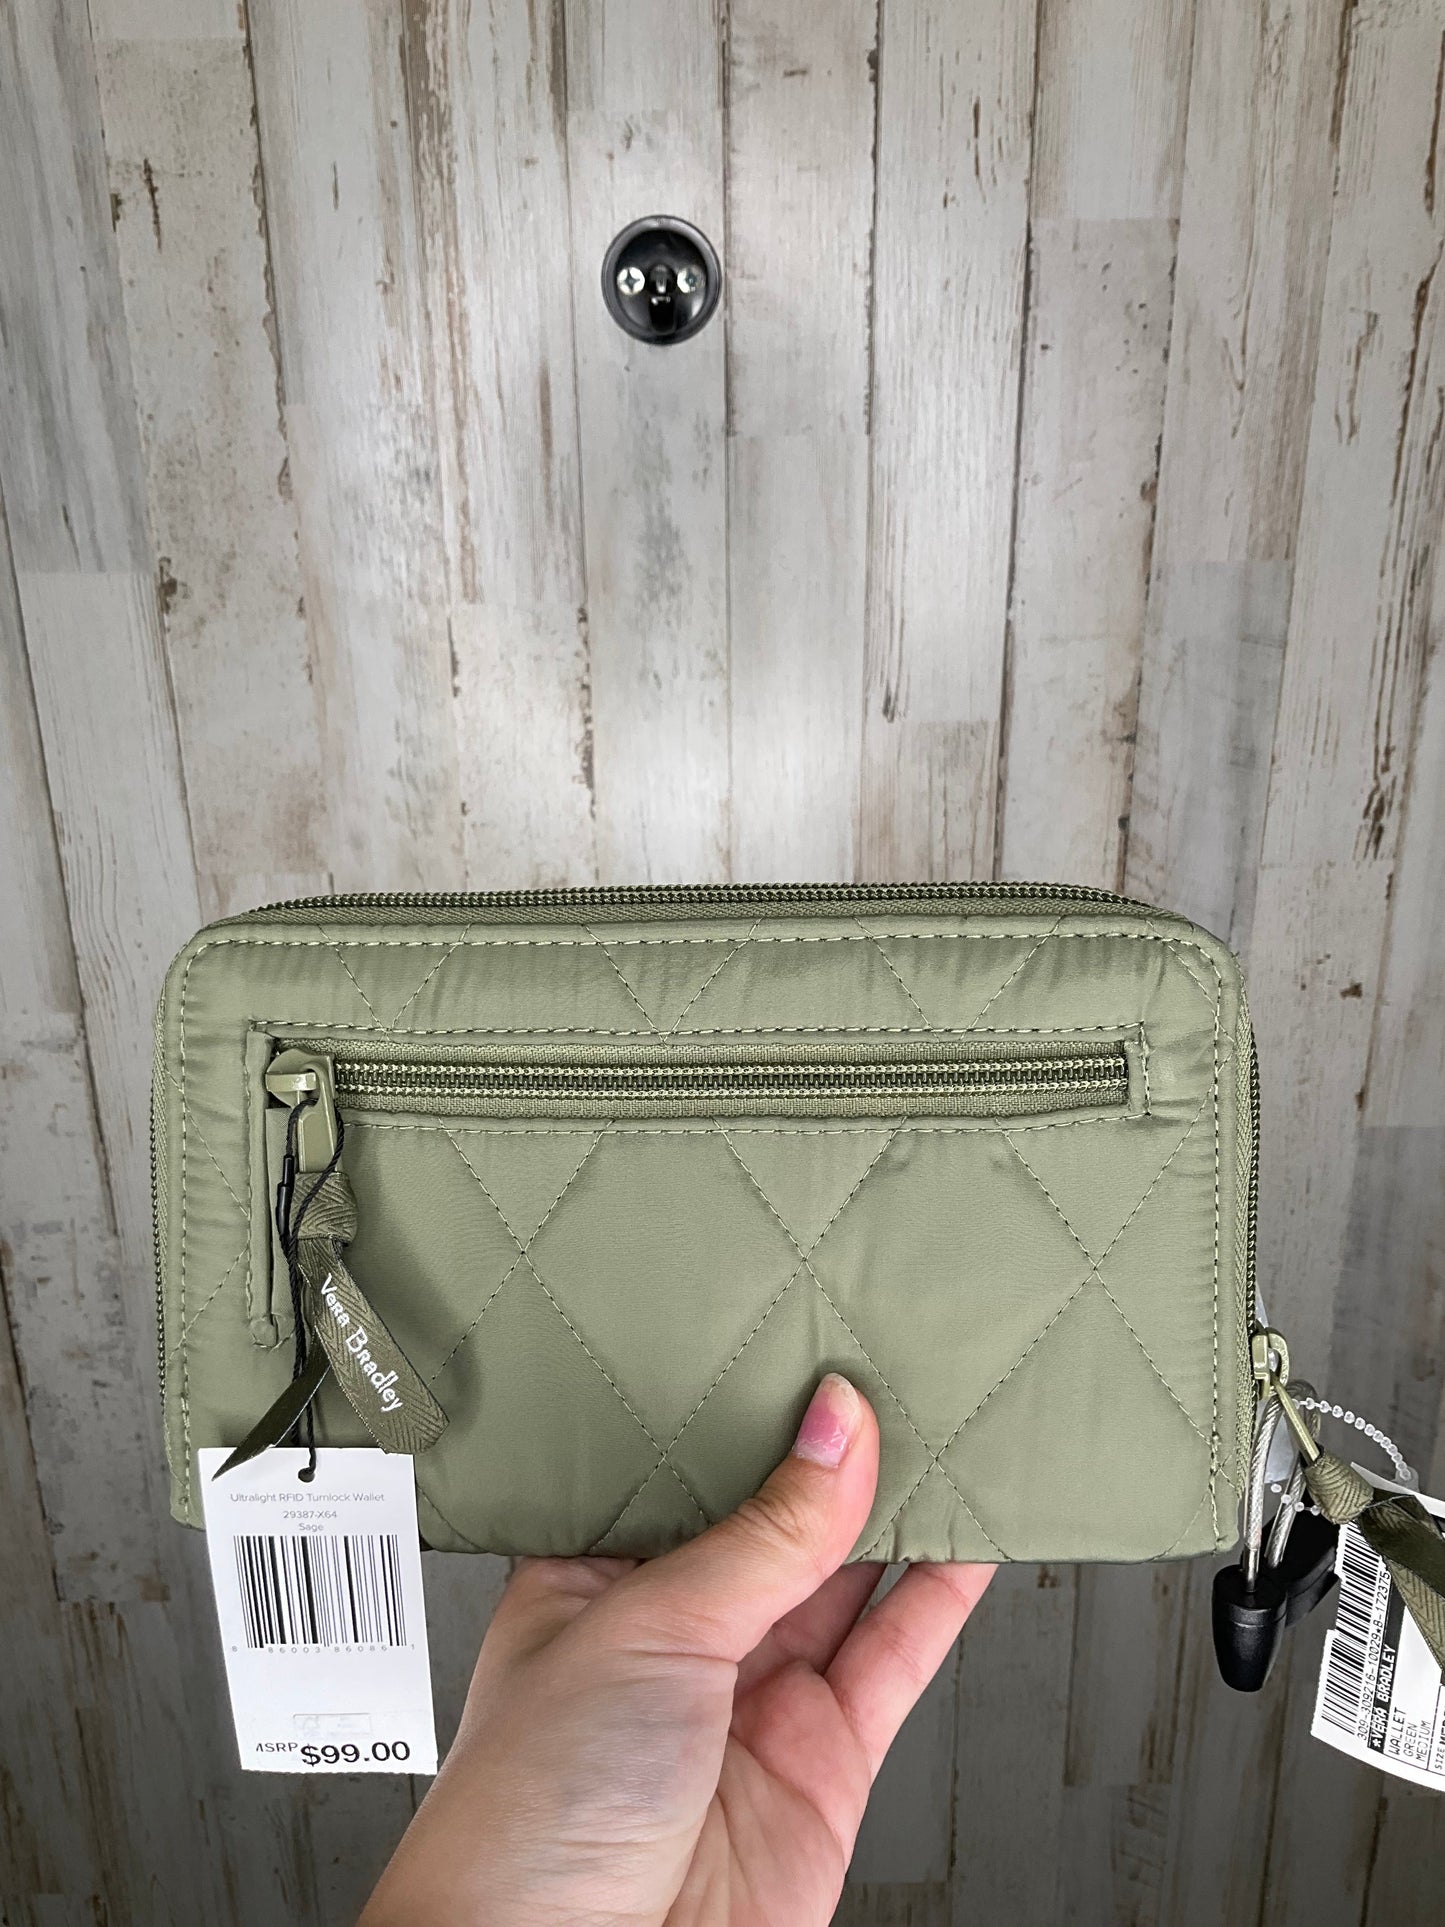 Wallet Vera Bradley, Size Medium